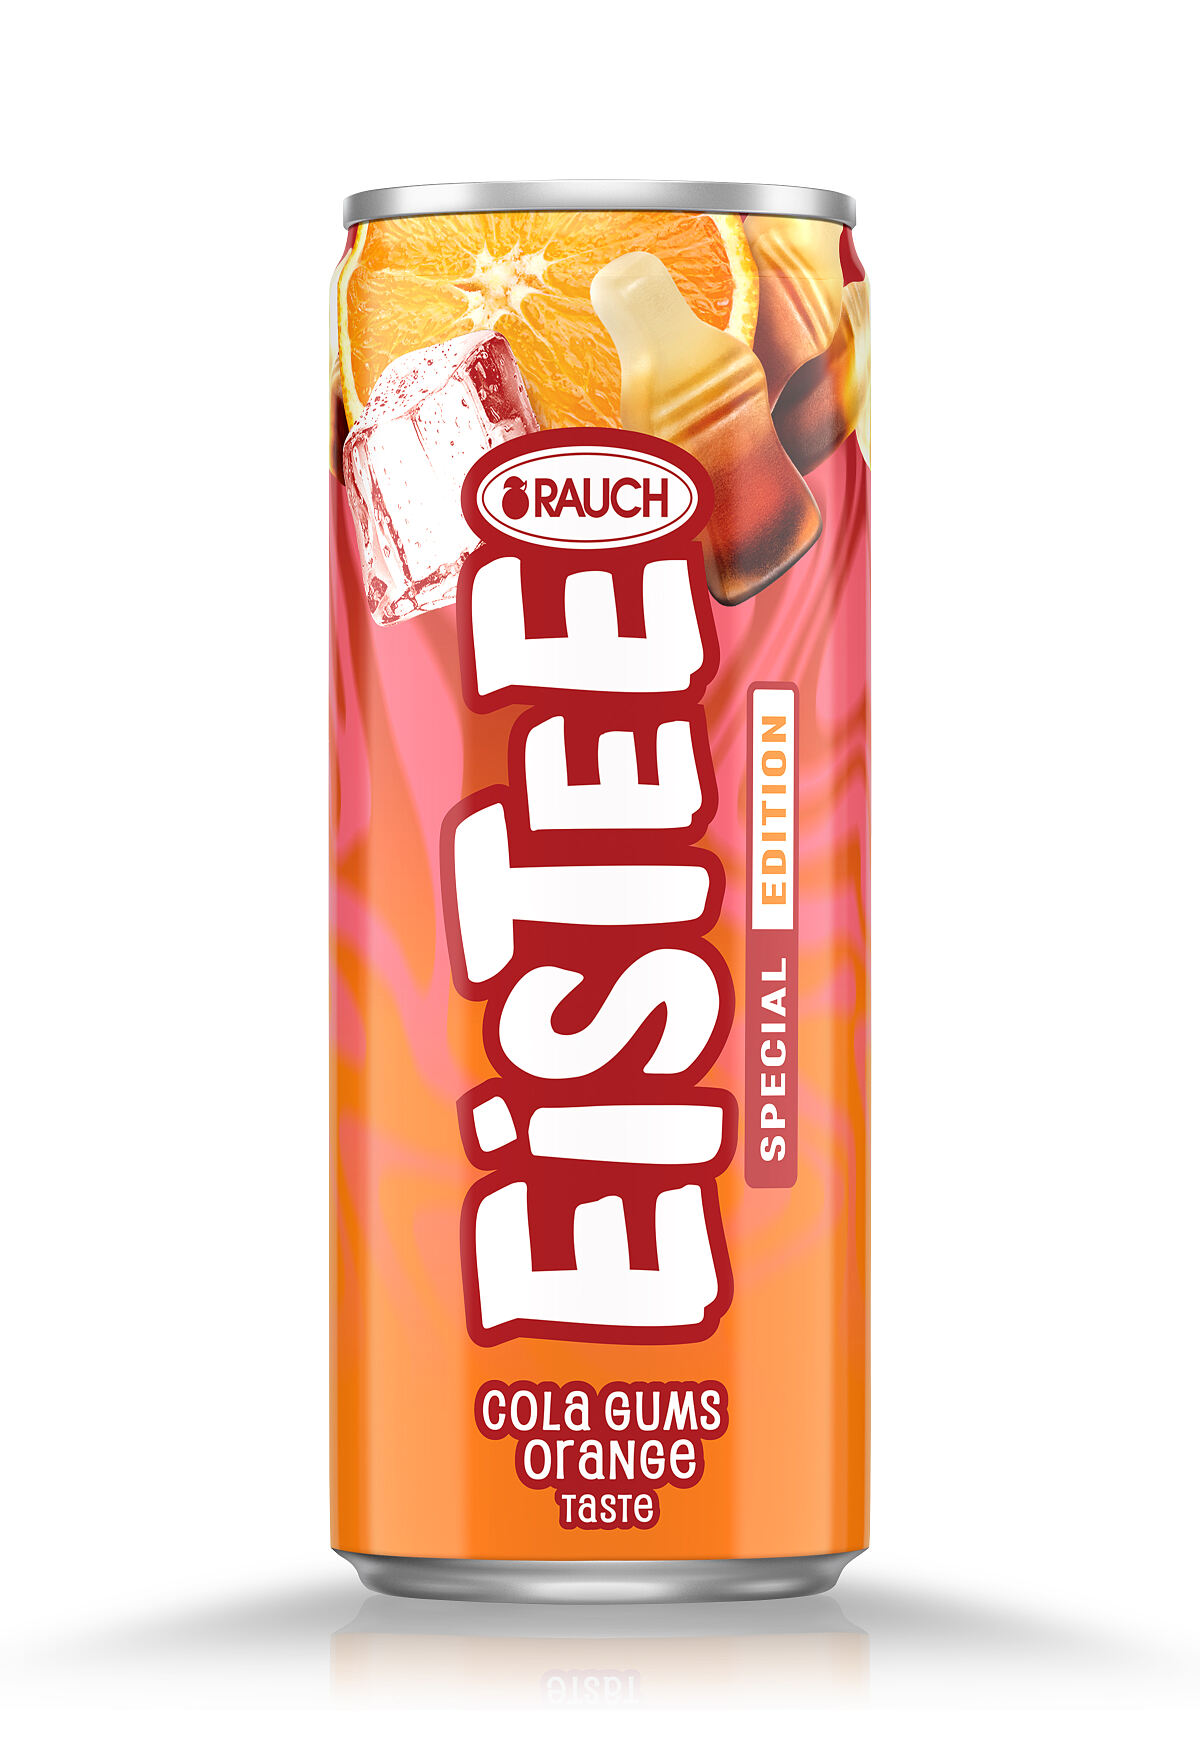 Rauch Eistee_Crazy Flavours_Cola Gums Orange_EUR 1,05_©Rauch Eistee